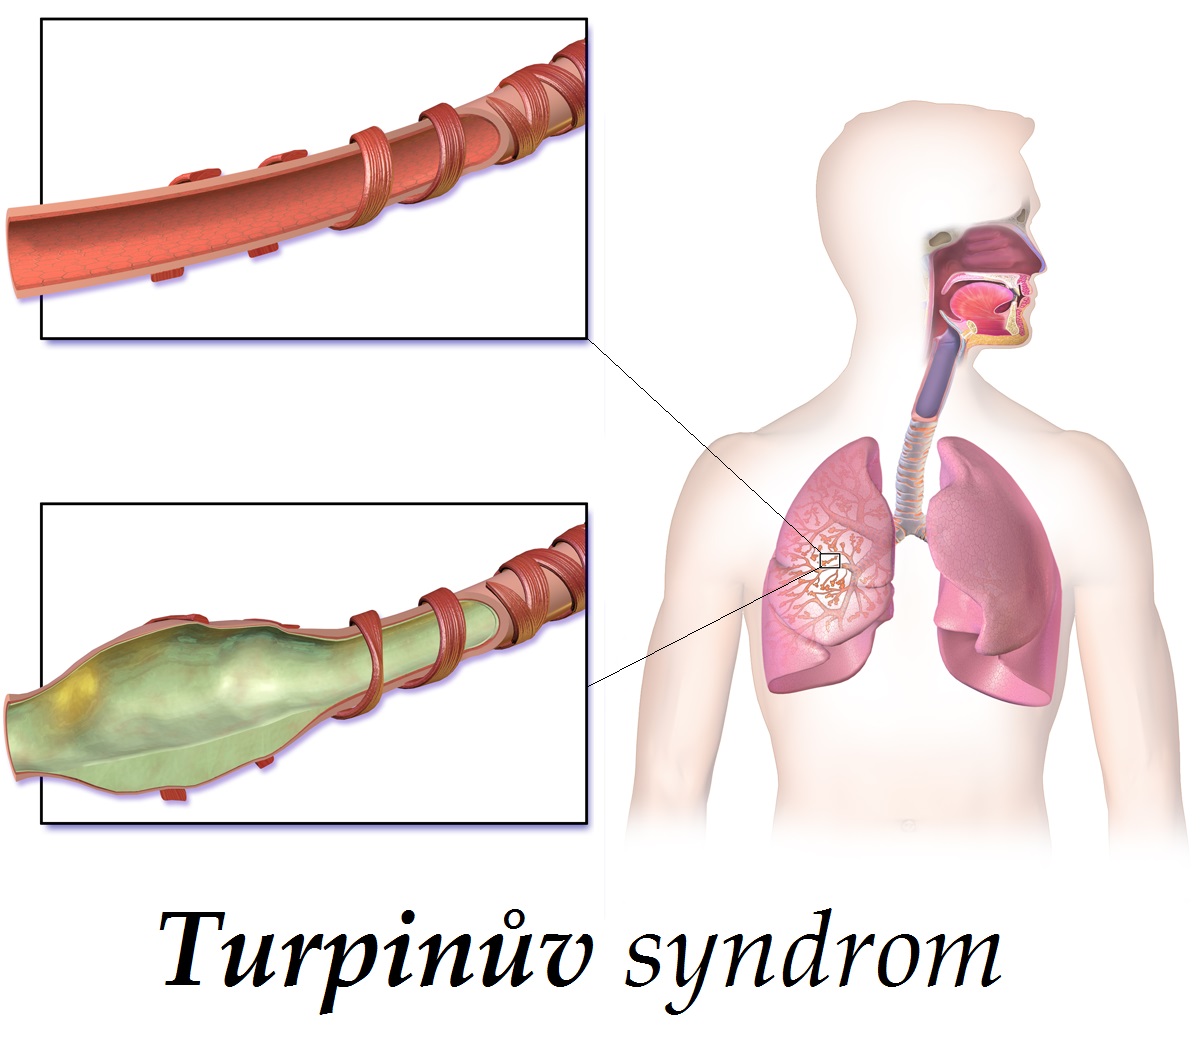 turpinuv syndrom priznaky projevy symptomy